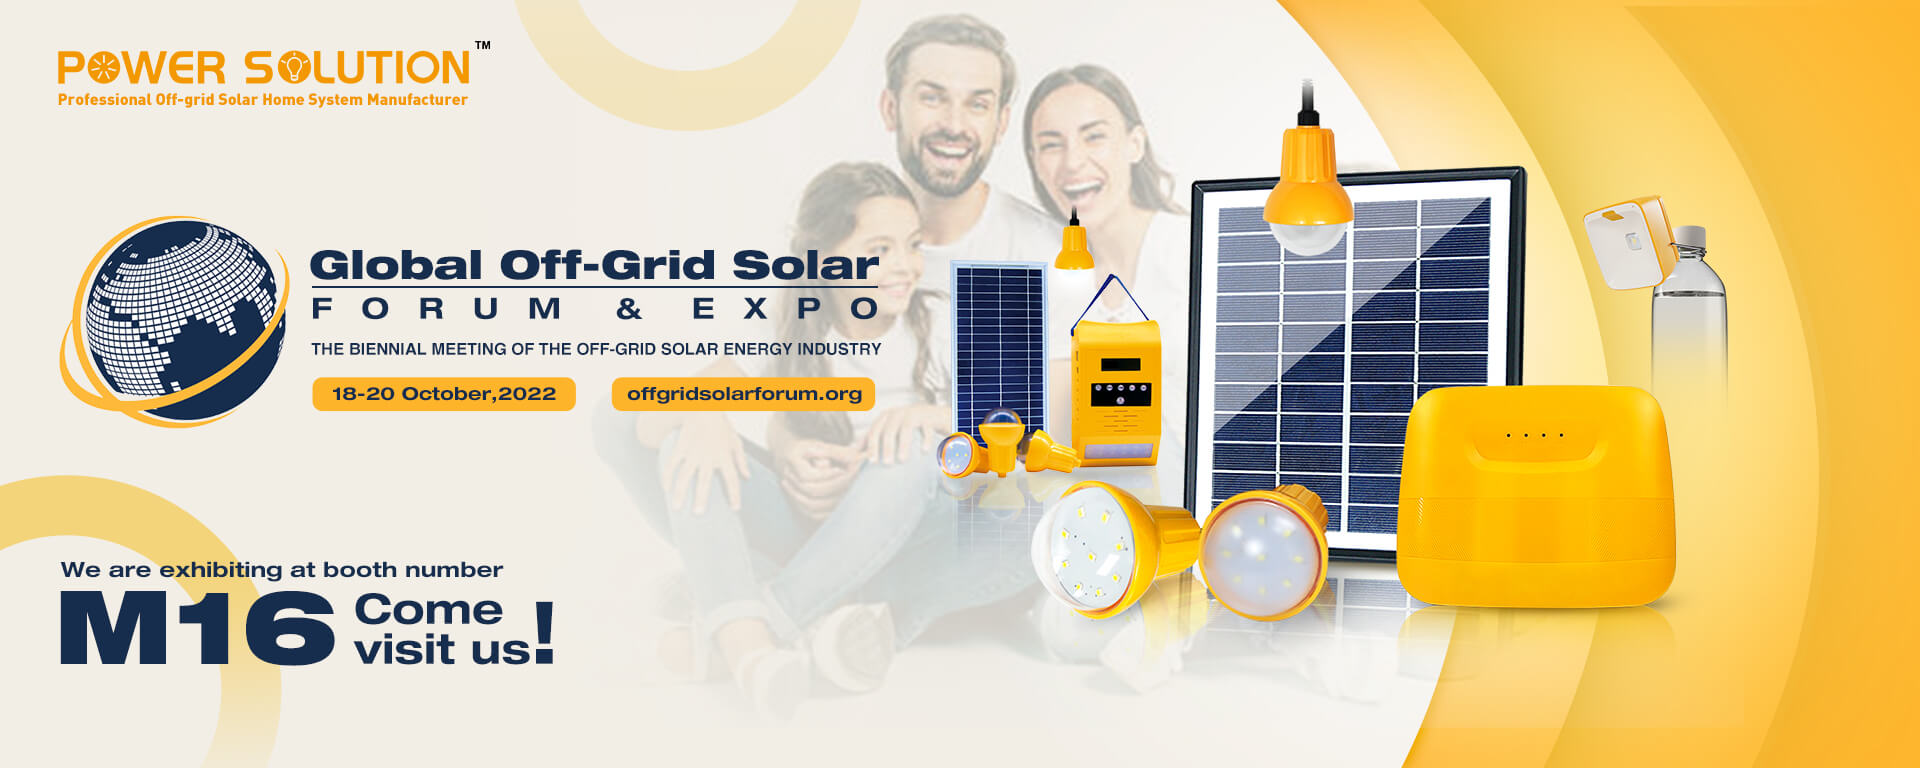 2022 Global Off-Grid Solar Forun & Expo